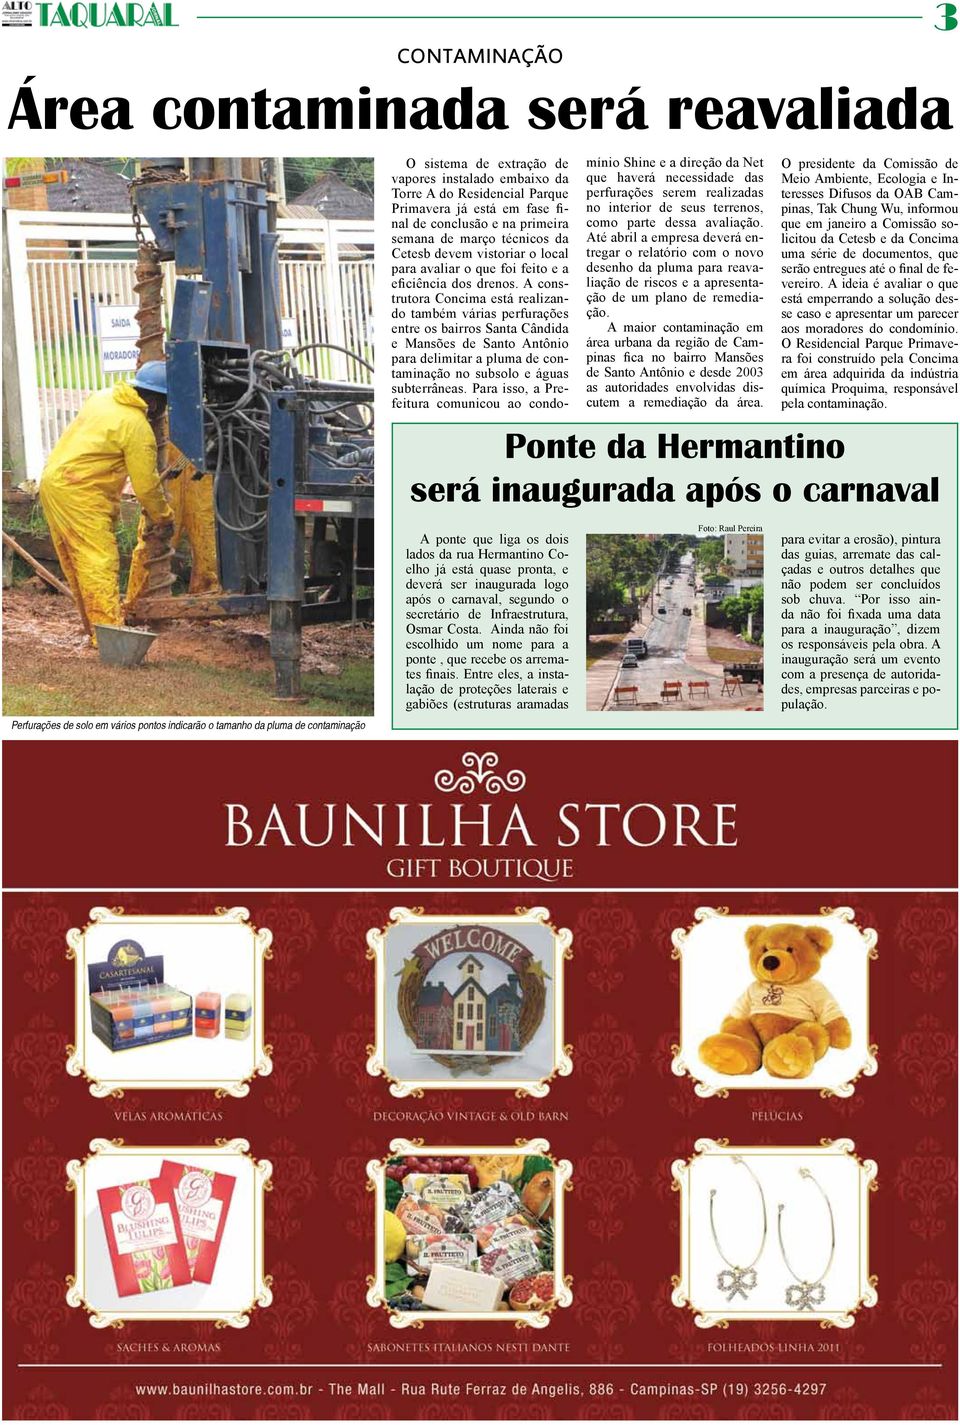 A construtora Concima está realizando também várias perfurações entre os bairros Santa Cândida e Mansões de Santo Antônio para delimitar a pluma de contaminação no subsolo e águas subterrâneas.